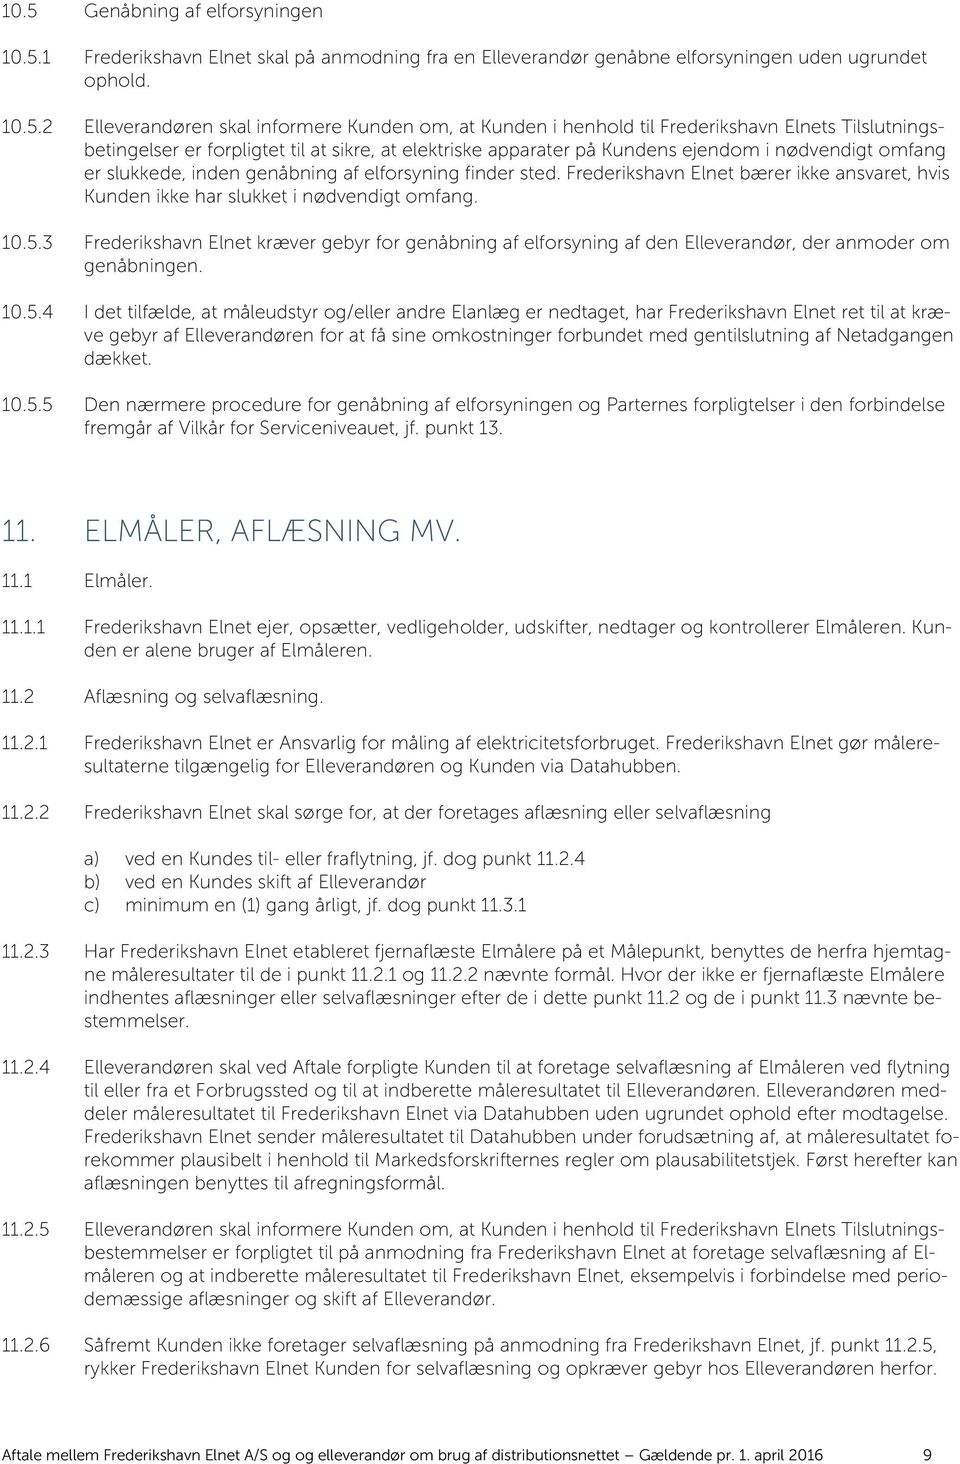 finder sted. Frederikshavn Elnet bærer ikke ansvaret, hvis Kunden ikke har slukket i nødvendigt omfang. 10.5.